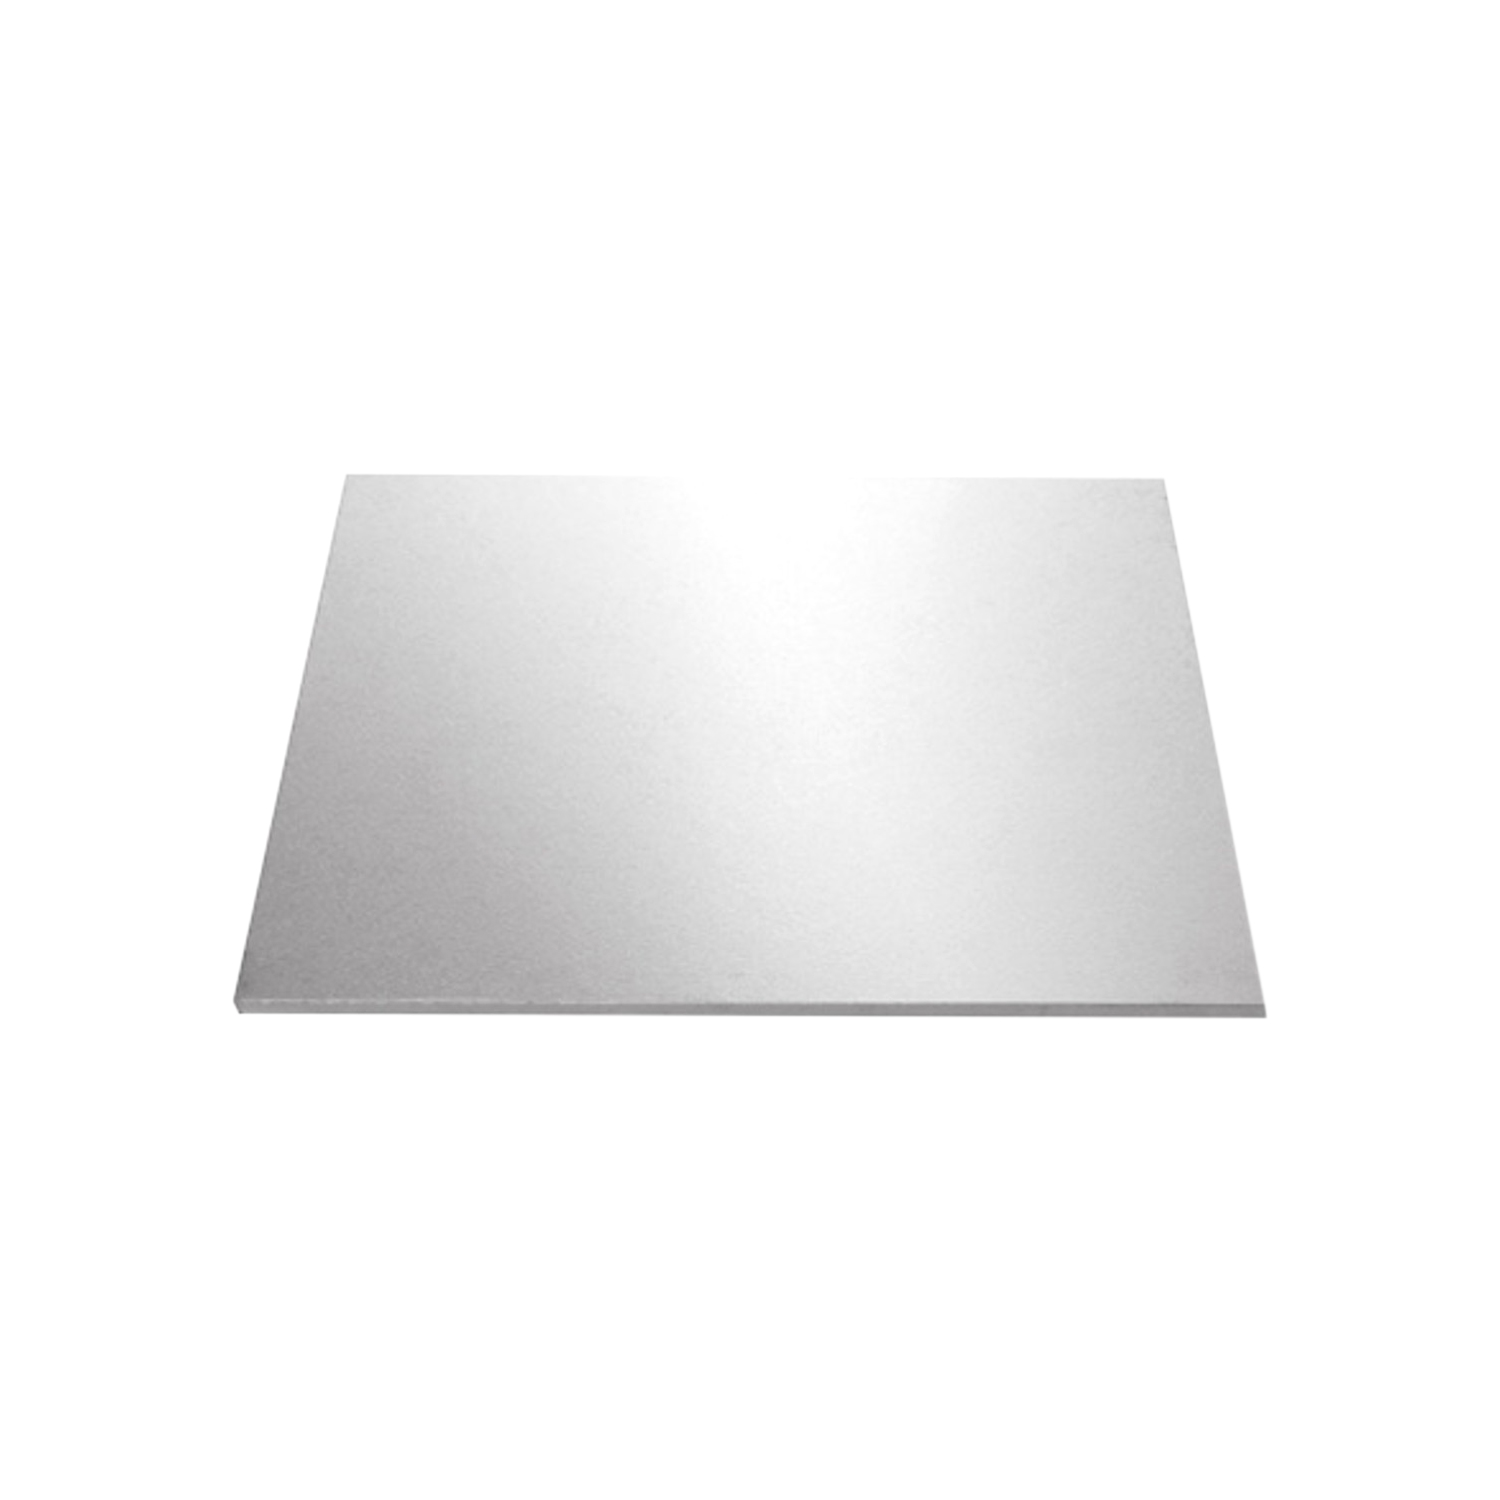 Cake Board (9 Inch), Silver Colour Square Shape